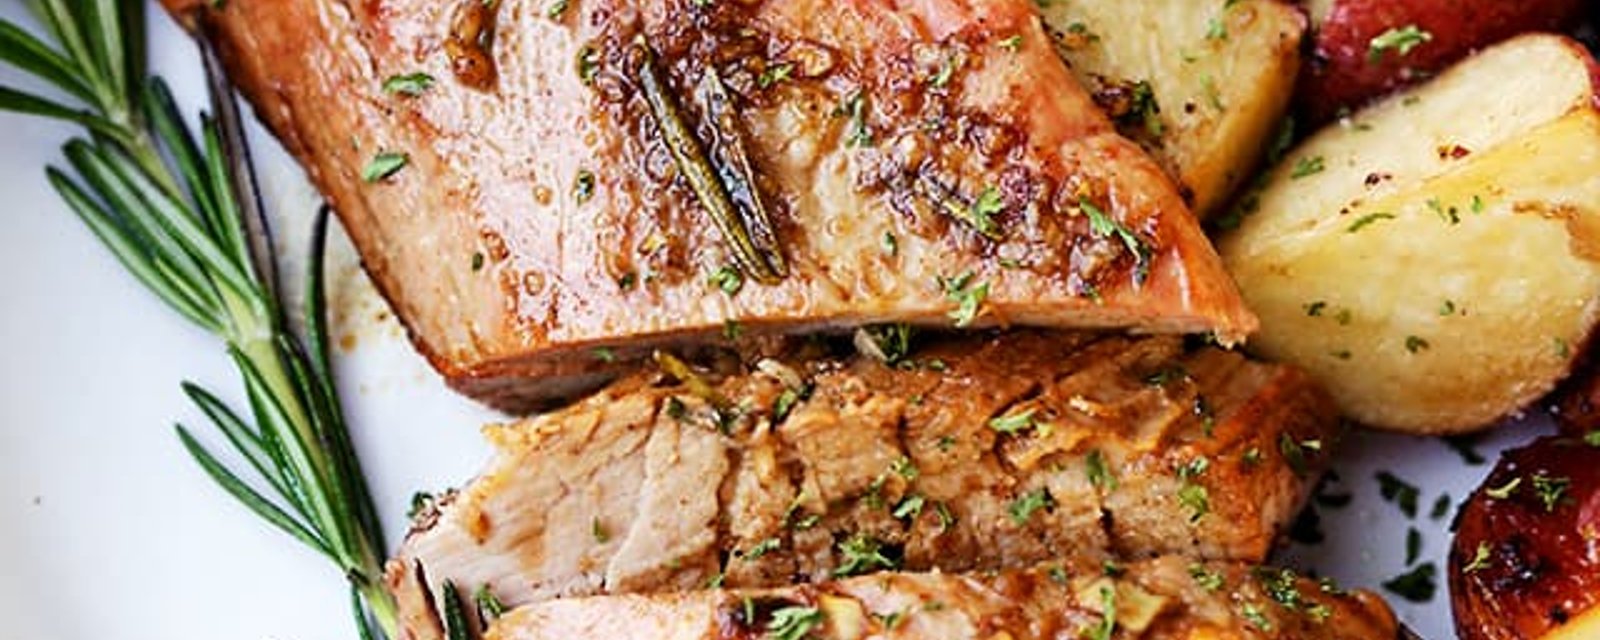 Des filets de porc à l'ail et au romarin, tendres, juteux, assaisonnés à la perfection!